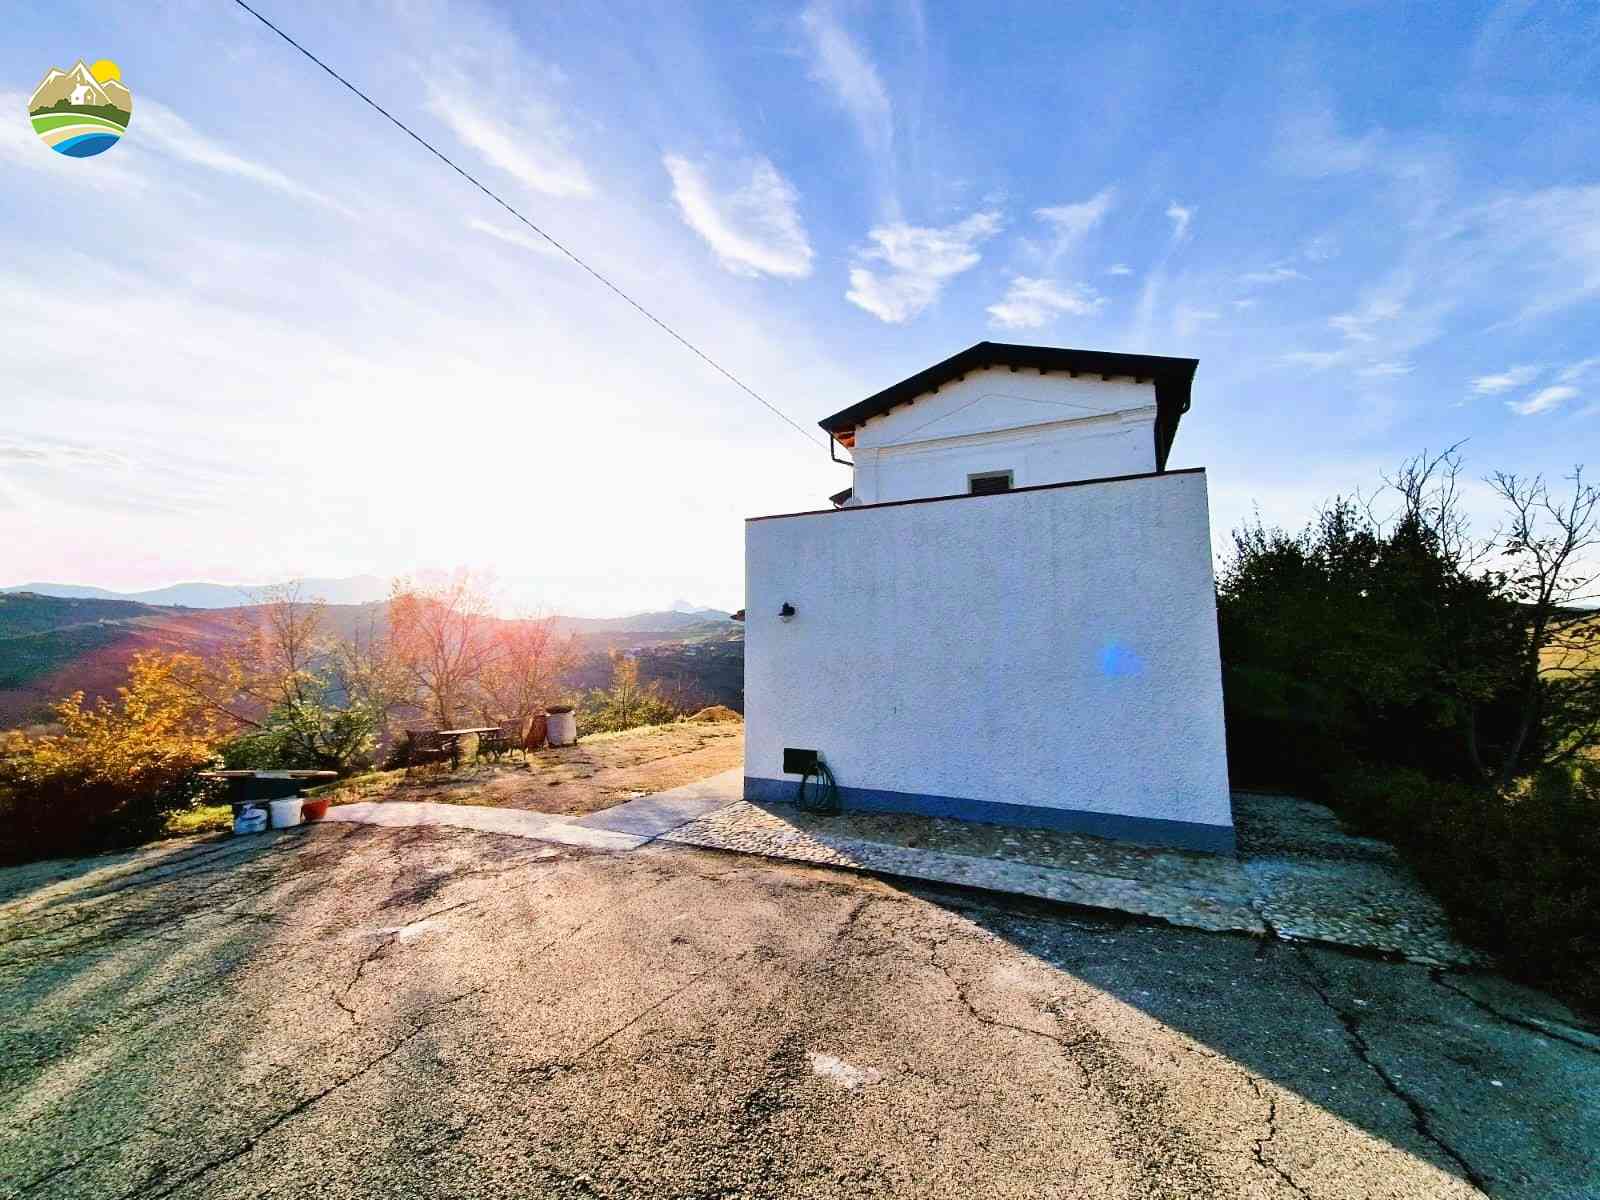 Casa di campagna Casa di campagna in vendita Cellino Attanasio (TE), Tenuta Vallerossa - Cellino Attanasio - EUR 238.752 790